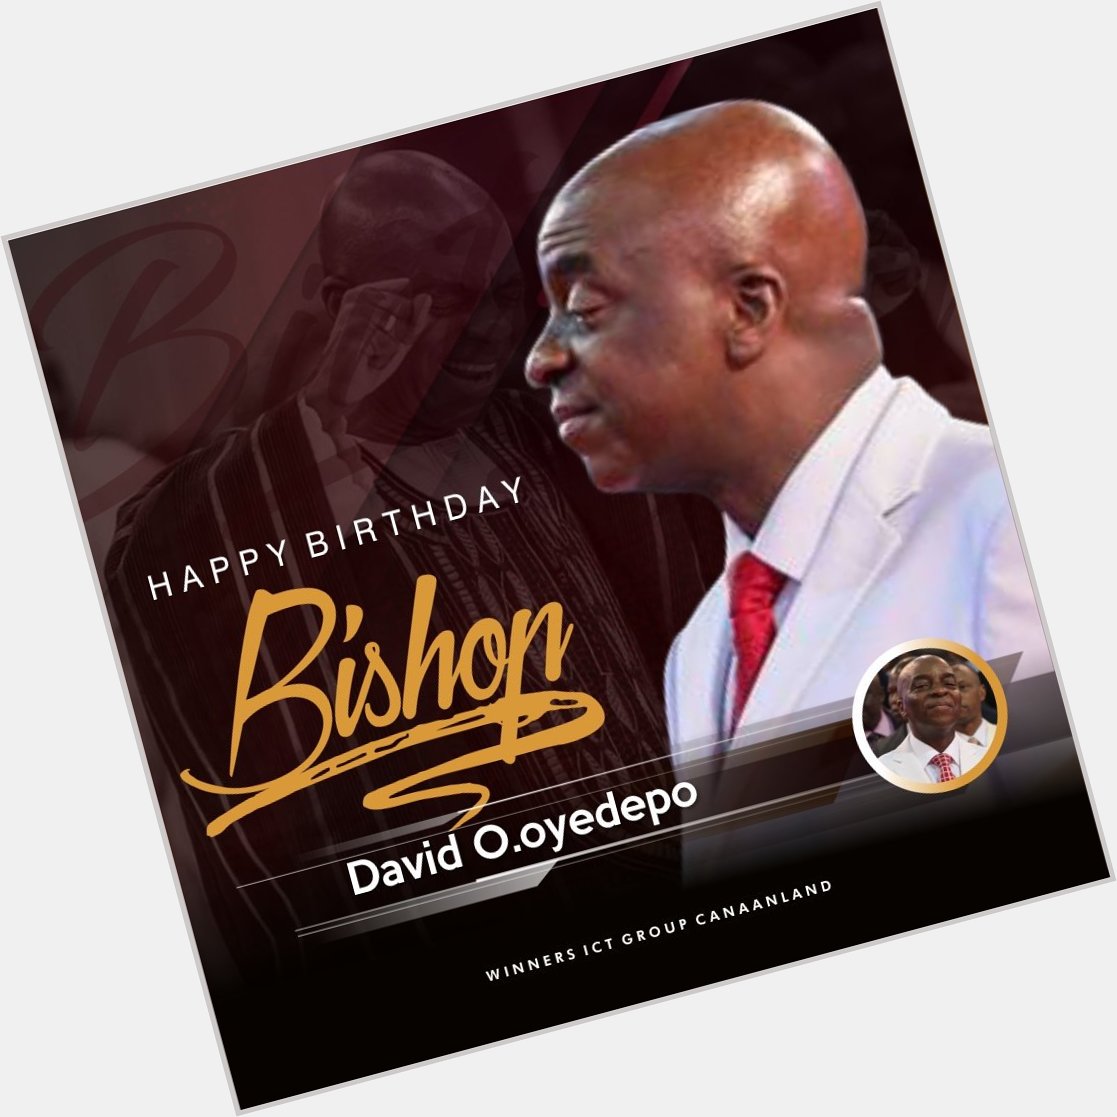 Happy 64th Birthday
Bishop David Oyedepo 